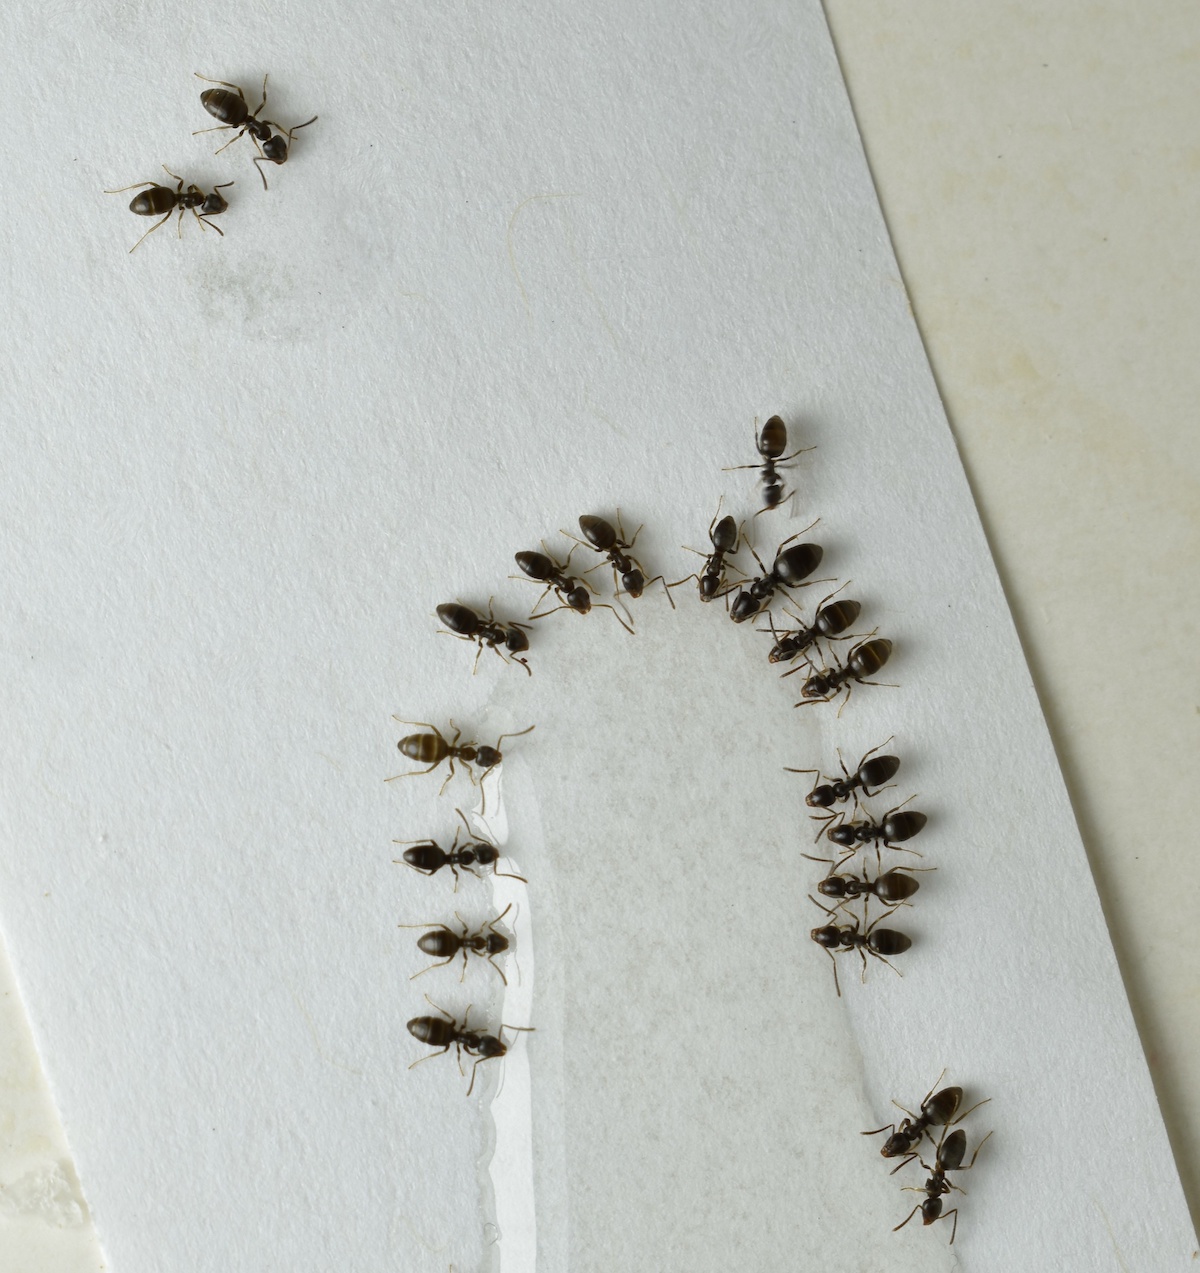 Odorous house ants bait